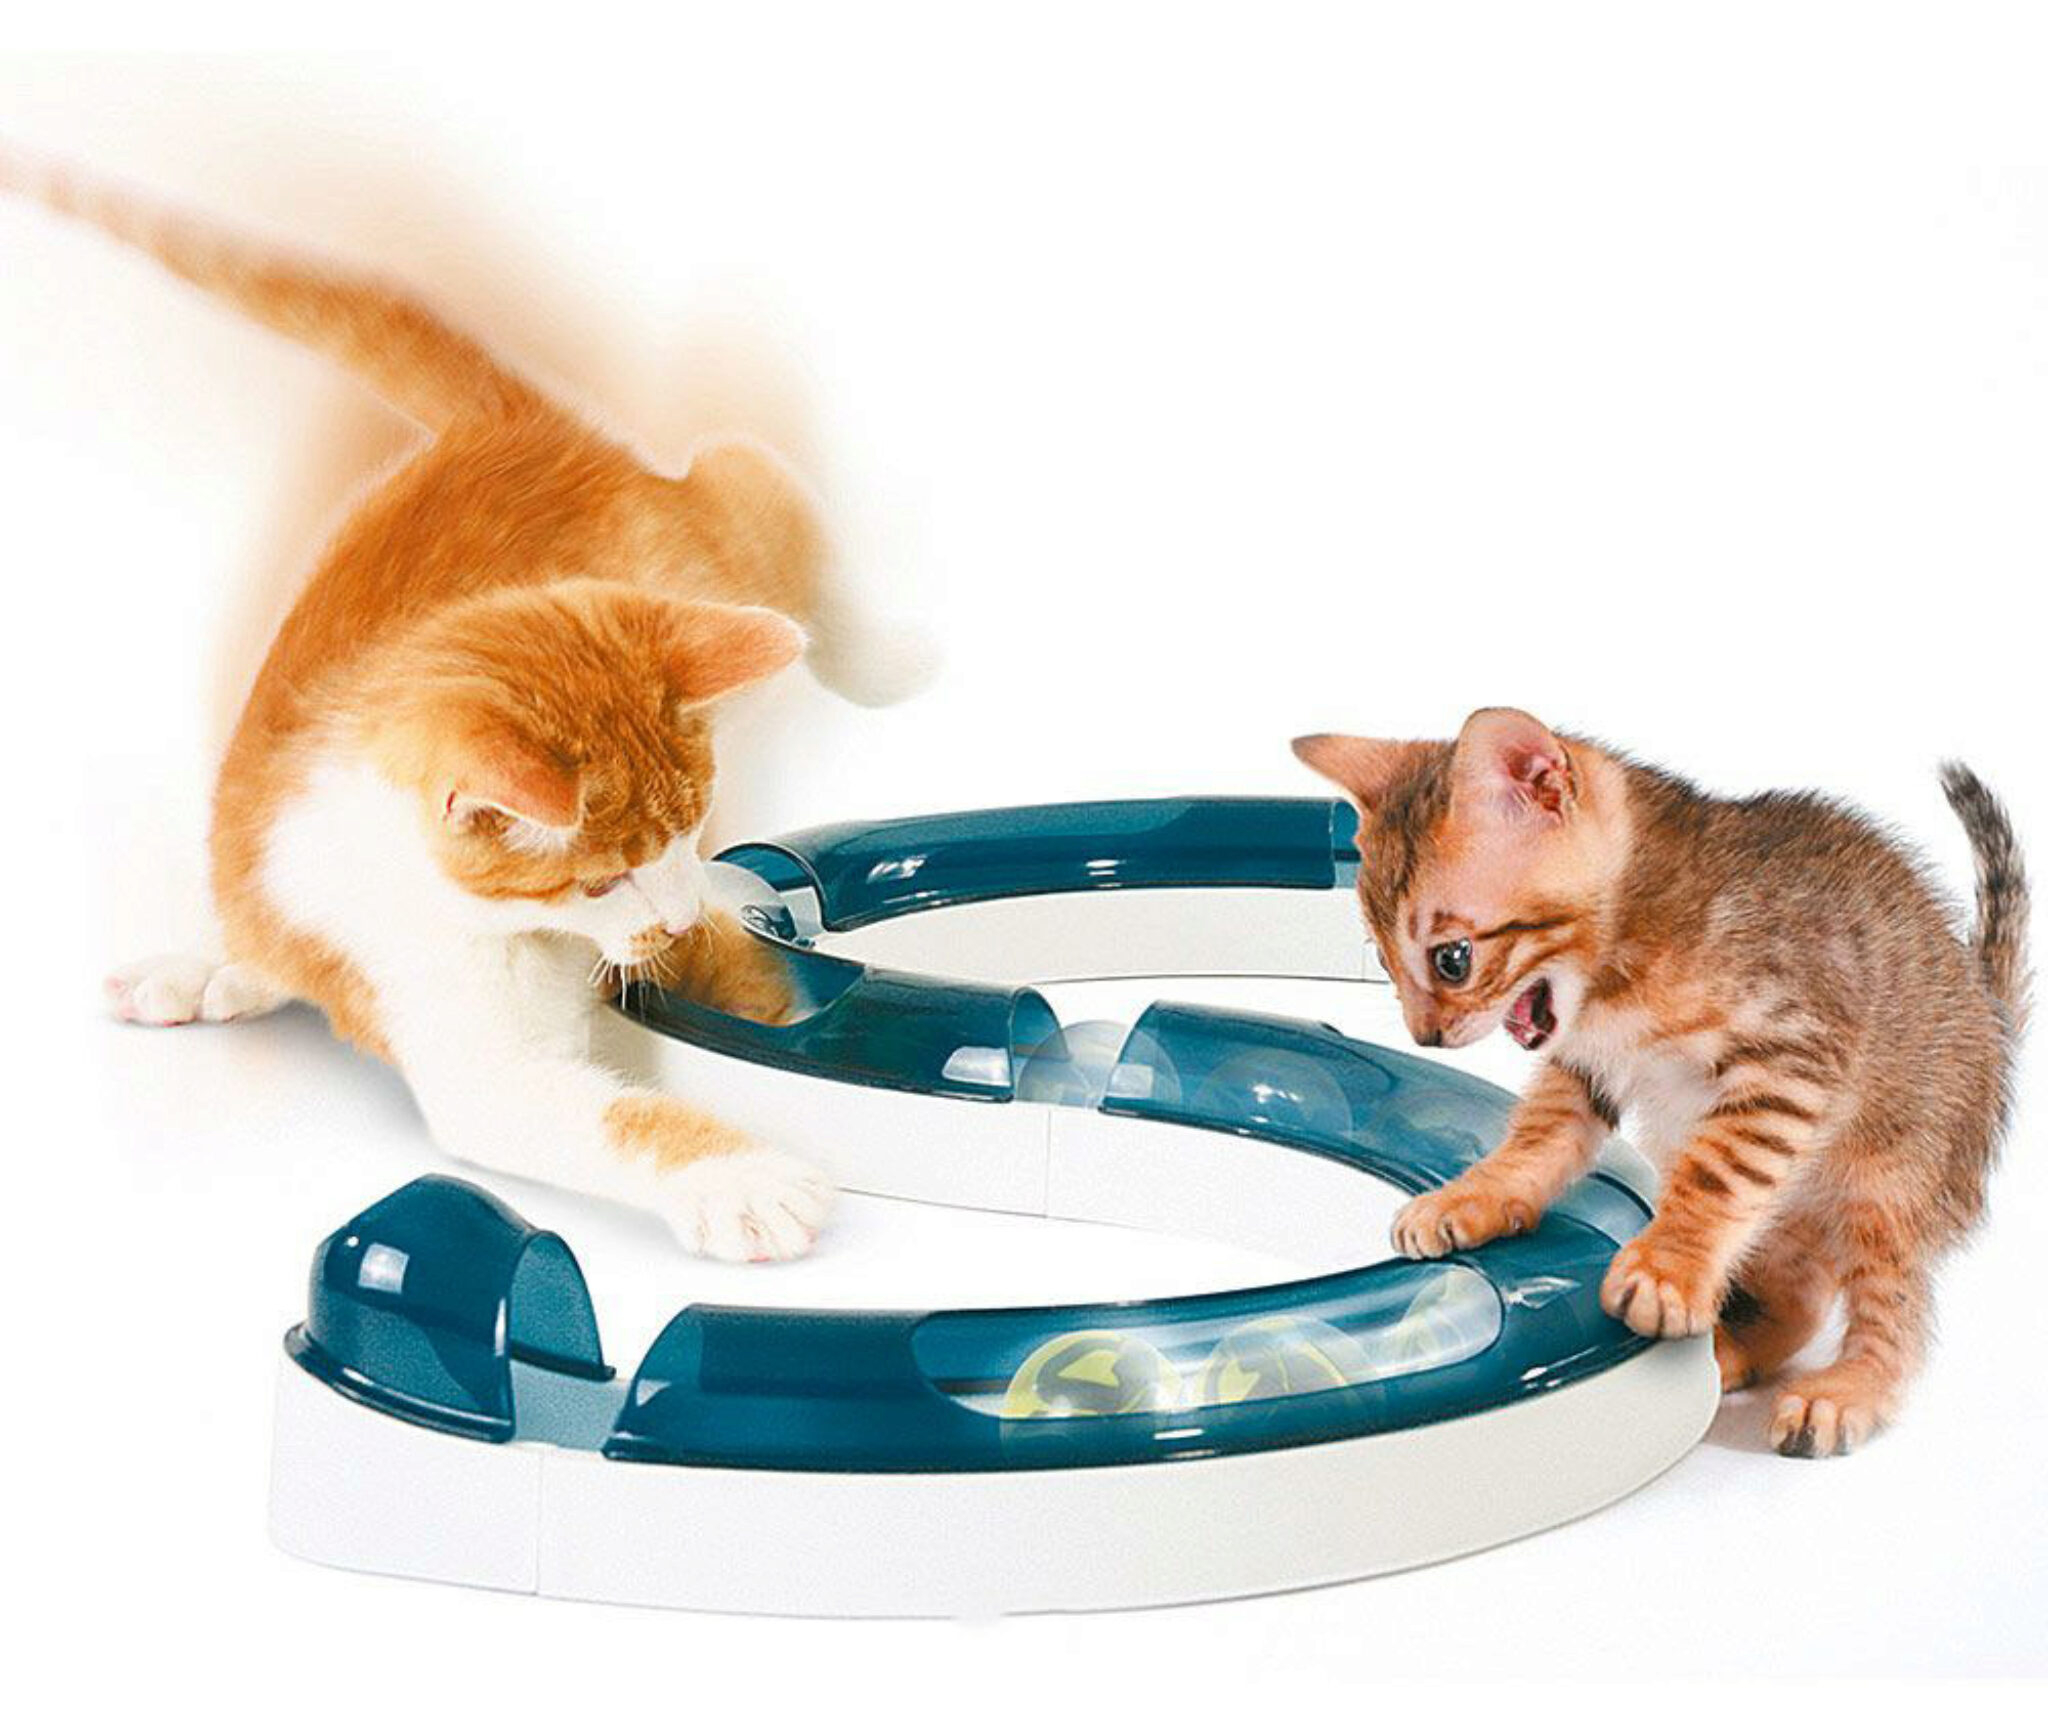 Cat Play Tunnel Pieghevole Lettino per Gatti/Conigli/Cane con 2 Canali Perfetto per Fare Gli Esercizi e Soddisfare la Curiosità al Gatto